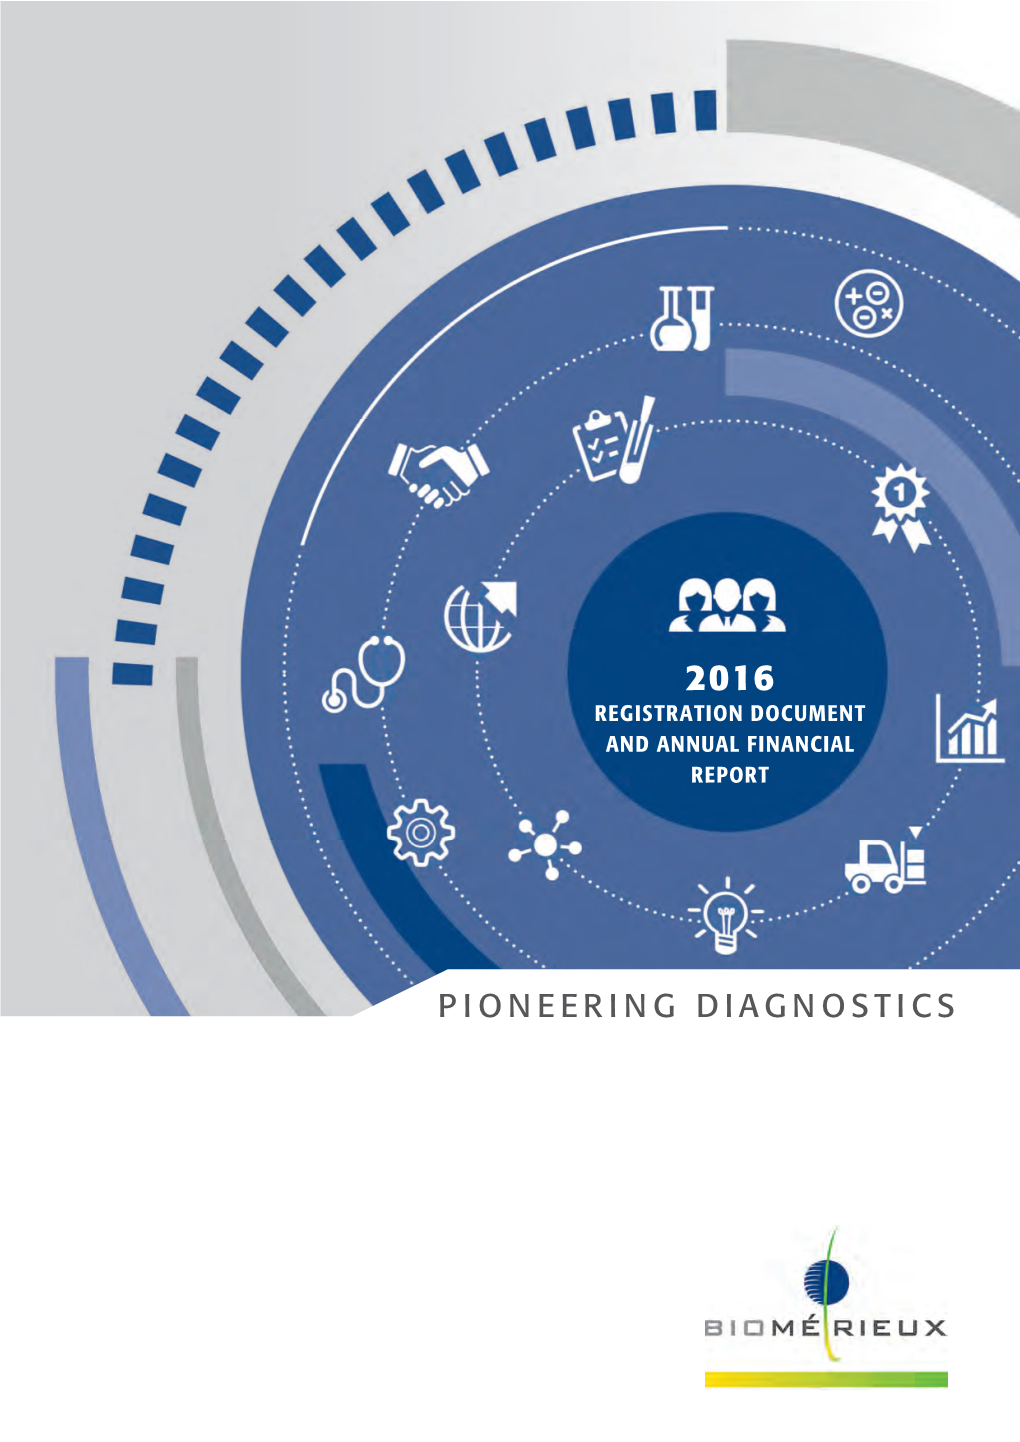 Pioneering Diagnostics Contents